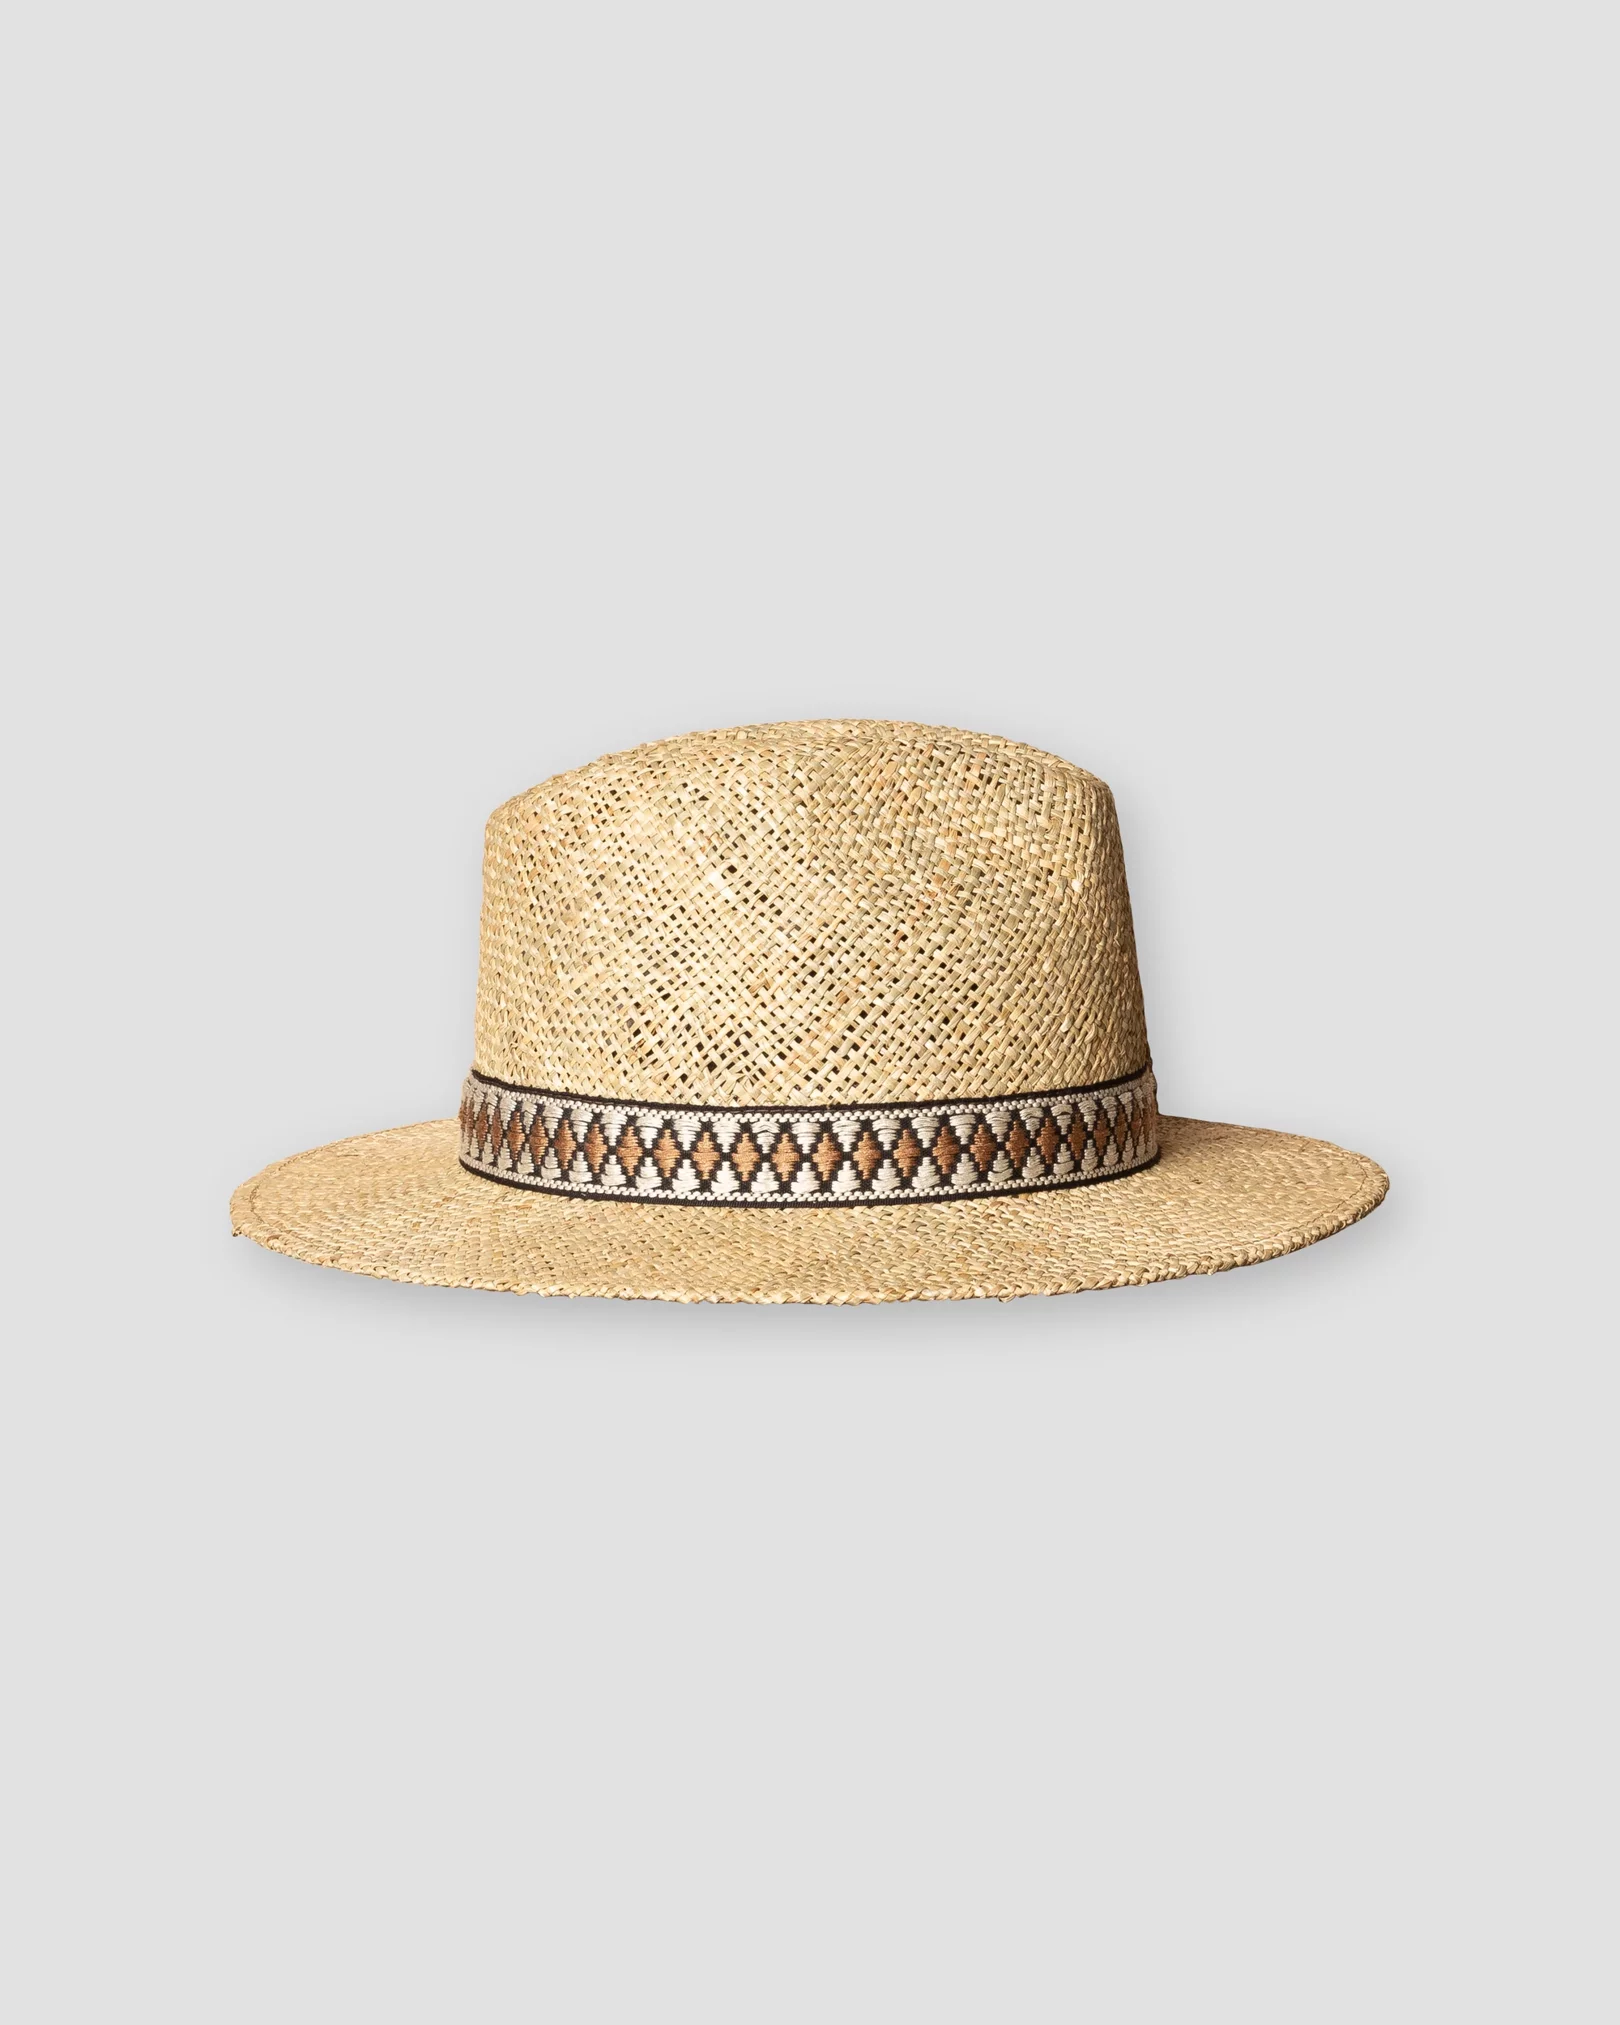 Eton - brown seagrass hat